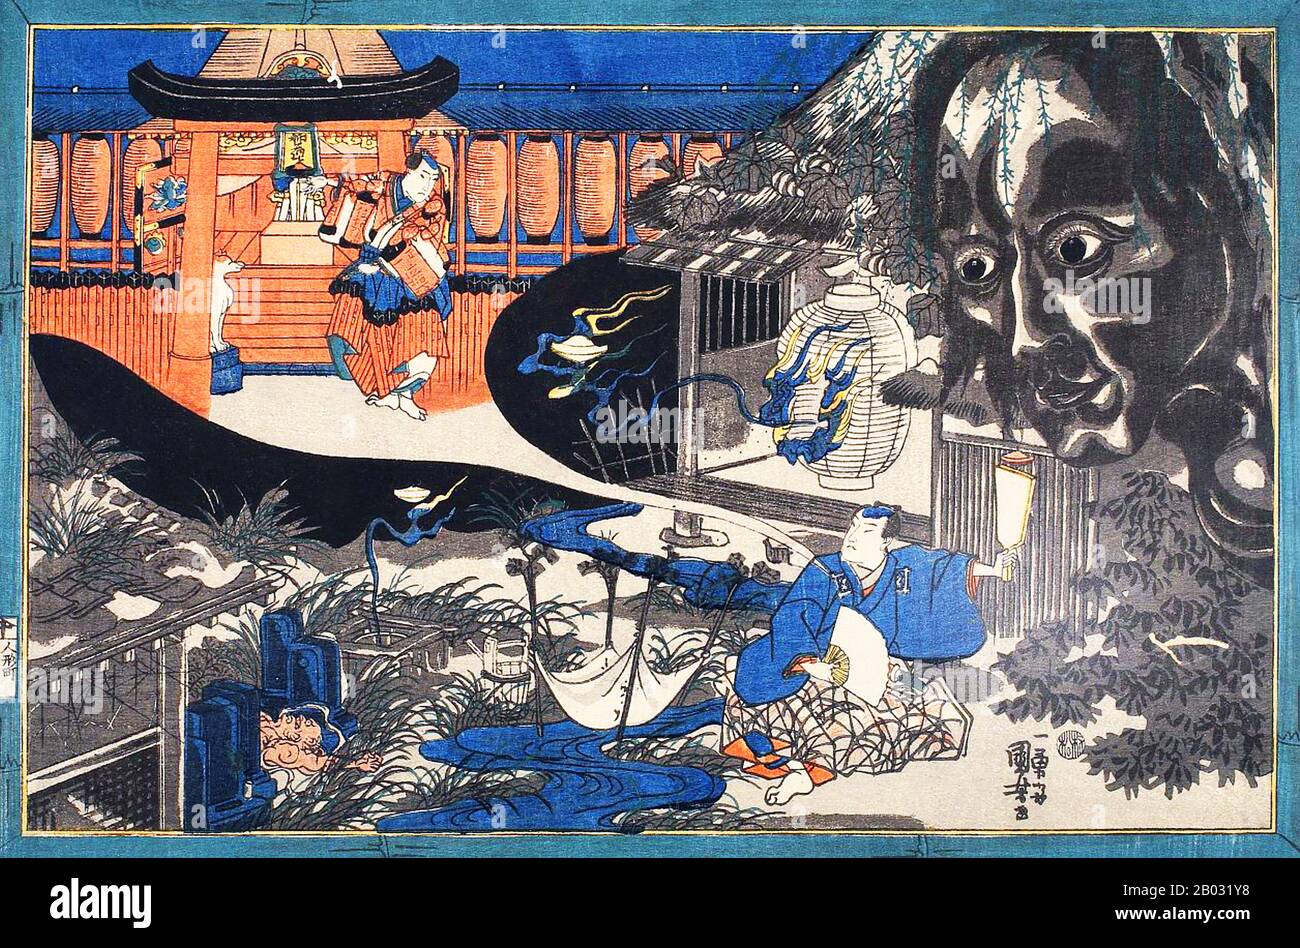 Utagawa Kuniyoshi (1 gennaio 1798 – 14 aprile 1861) è stato uno degli ultimi grandi maestri dello stile ukiyo-e giapponese di stampe e dipinti su blocchi di legno. È associato alla scuola di Utagawa. La gamma di soggetti preferiti di Kuniyoshi comprendeva molti generi: Paesaggi, belle donne, attori Kabuki, gatti e animali mitici. È noto per le rappresentazioni delle battaglie dei samurai e dei leggendari eroi. La sua opera fu influenzata da influenze occidentali nella pittura e nella caricatura del paesaggio. Foto Stock